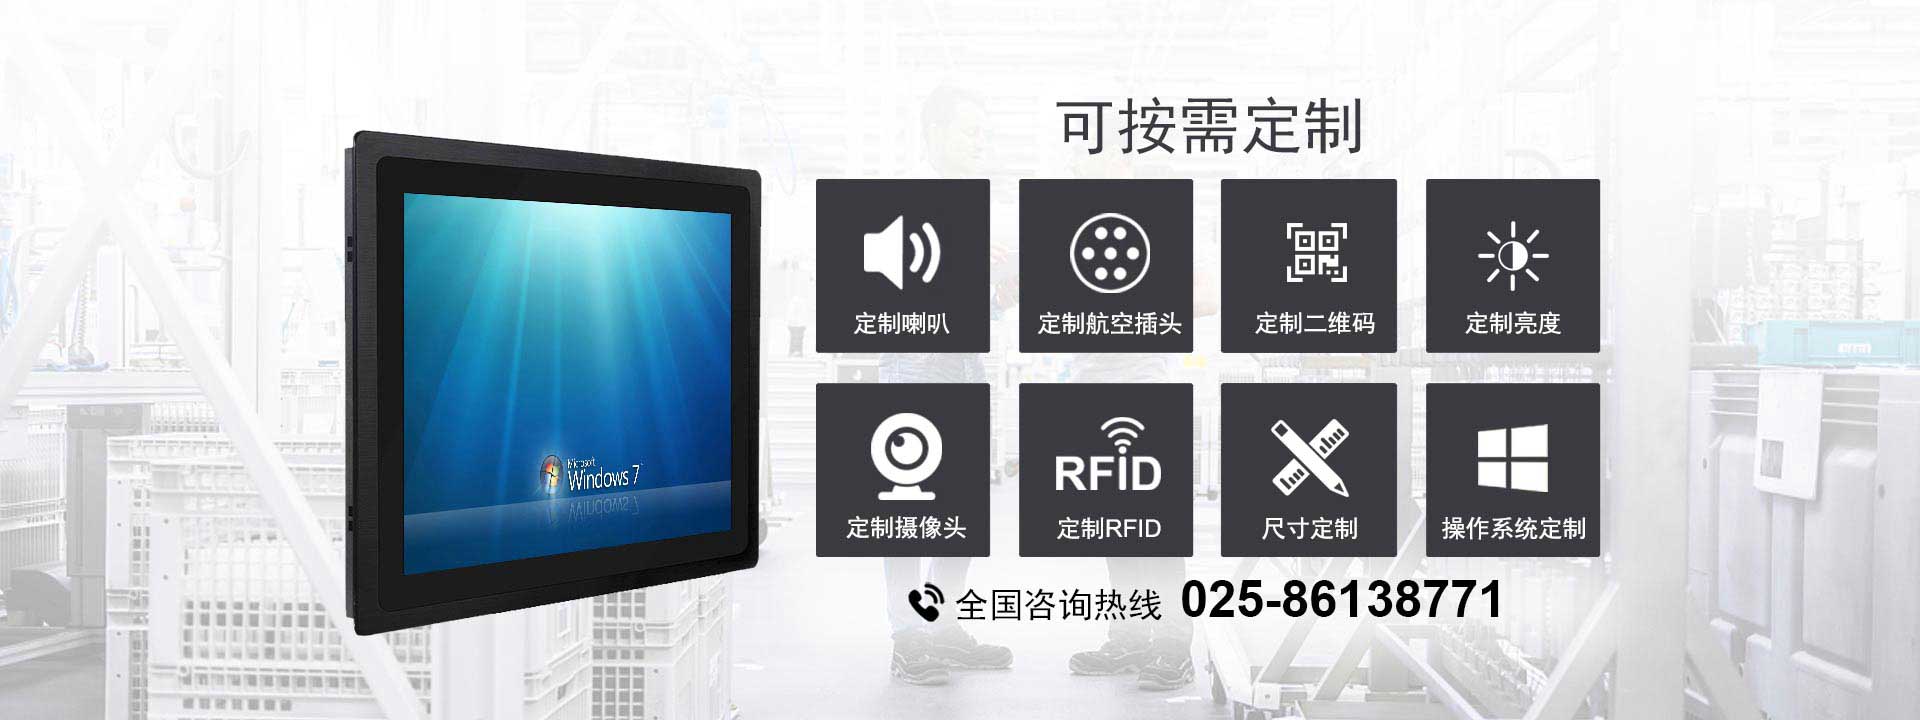 安卓系统、windows系统可选的嵌入式工业平板电脑